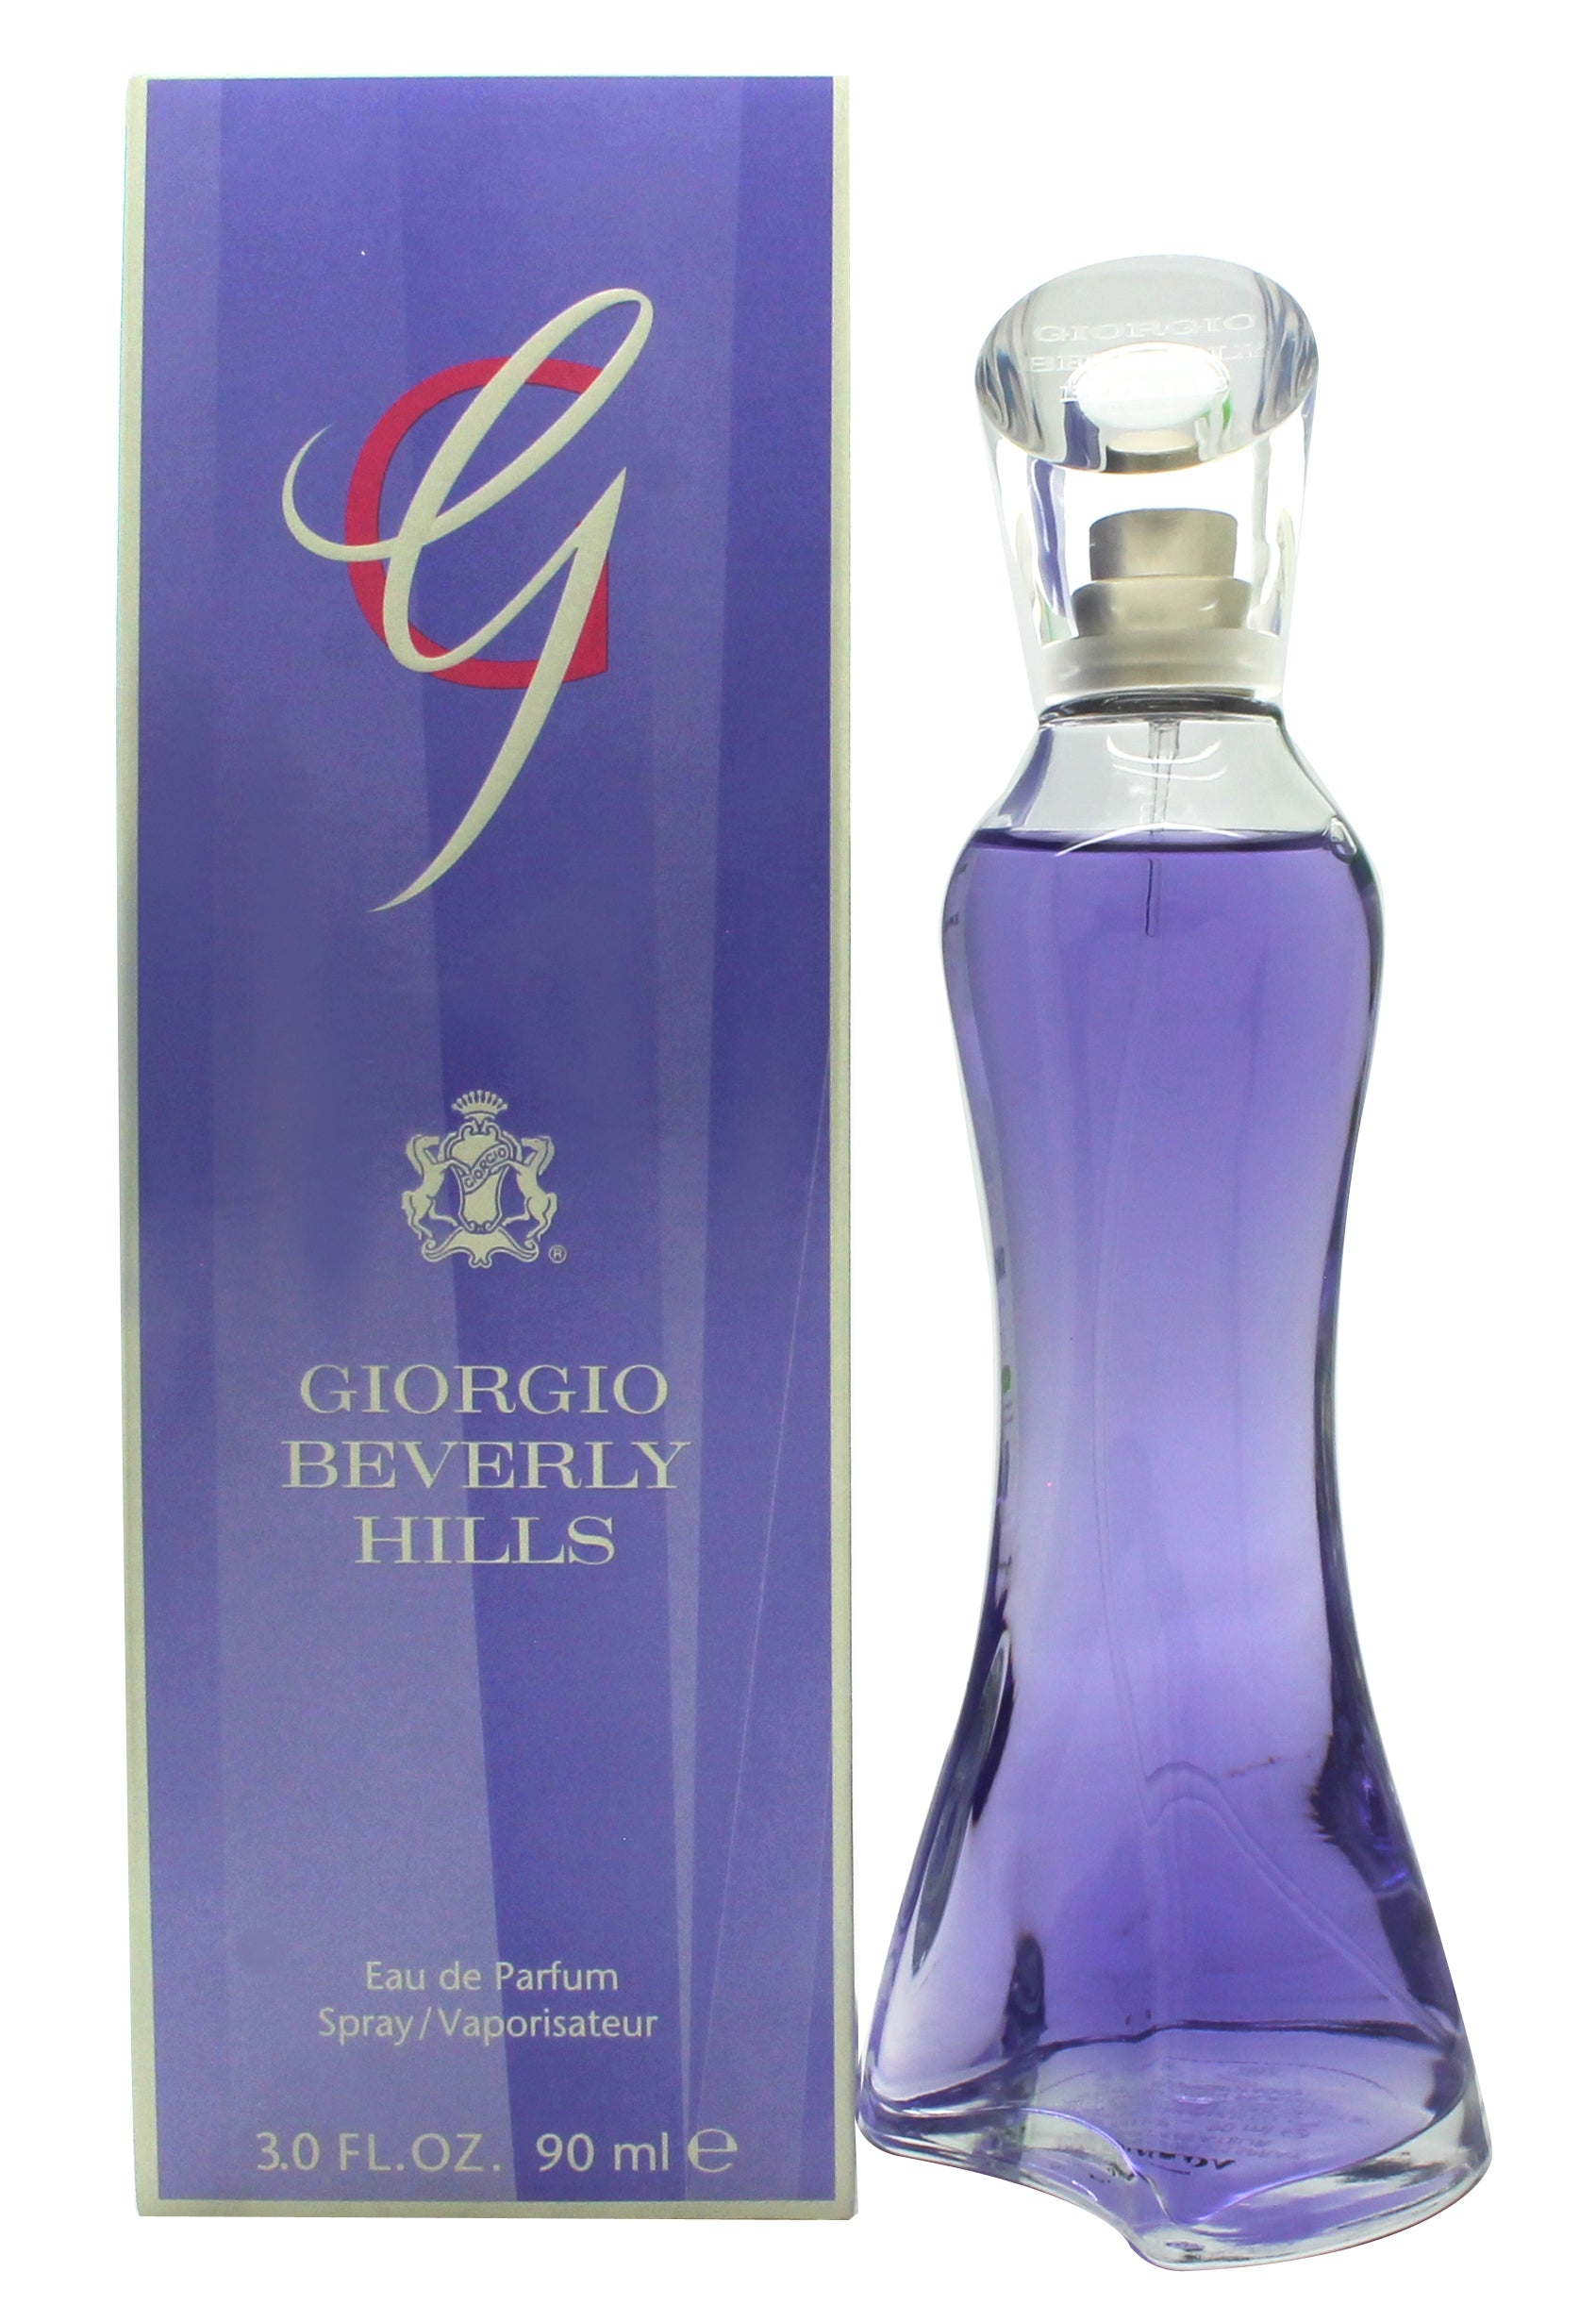 View Giorgio Beverly Hills G Eau de Parfum 90ml Spray information